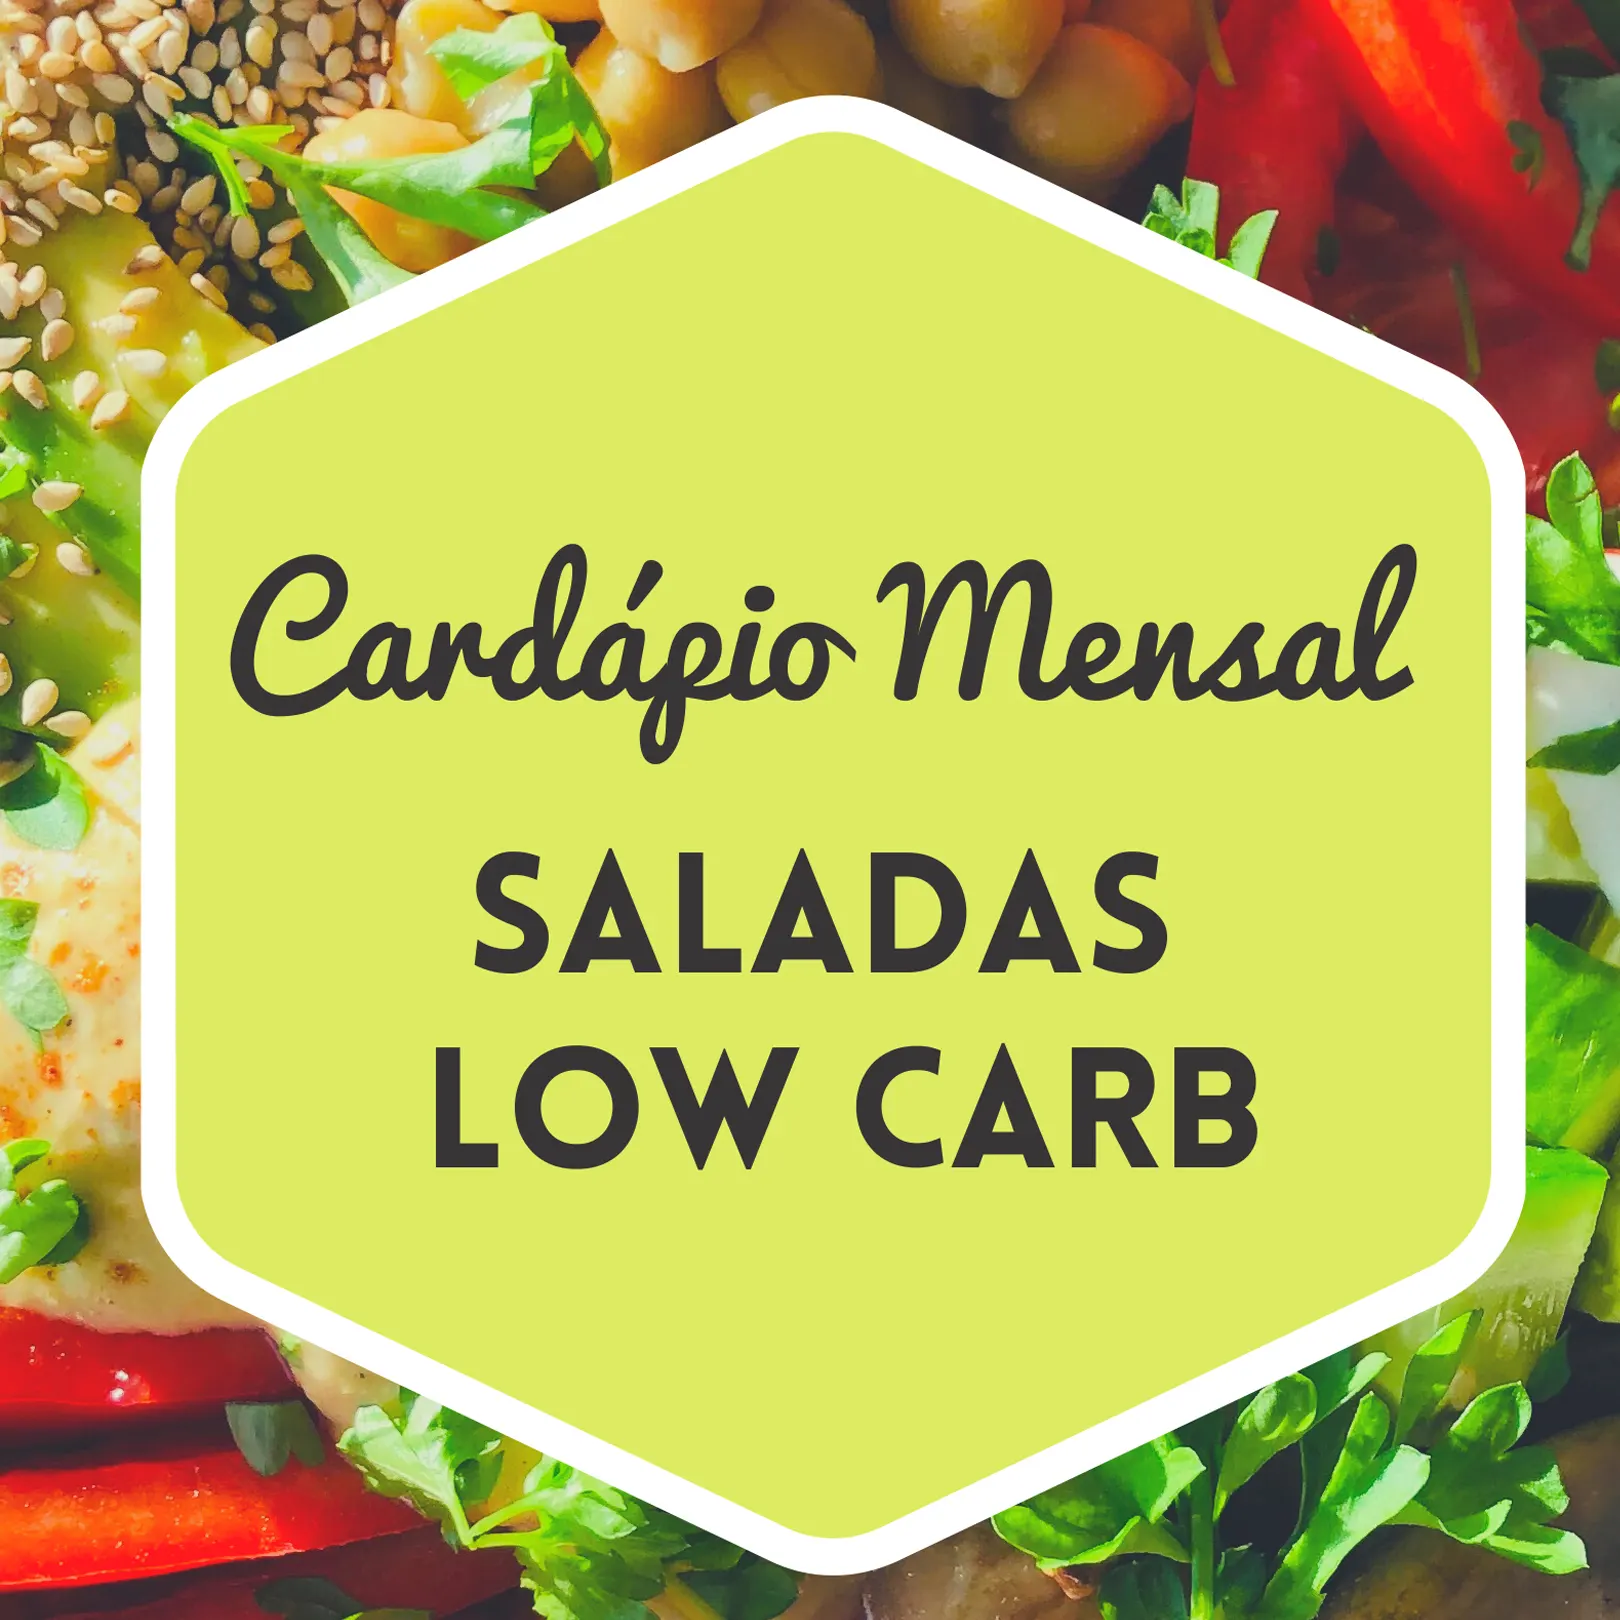 Cardápio Mensal Saladas Low Carb